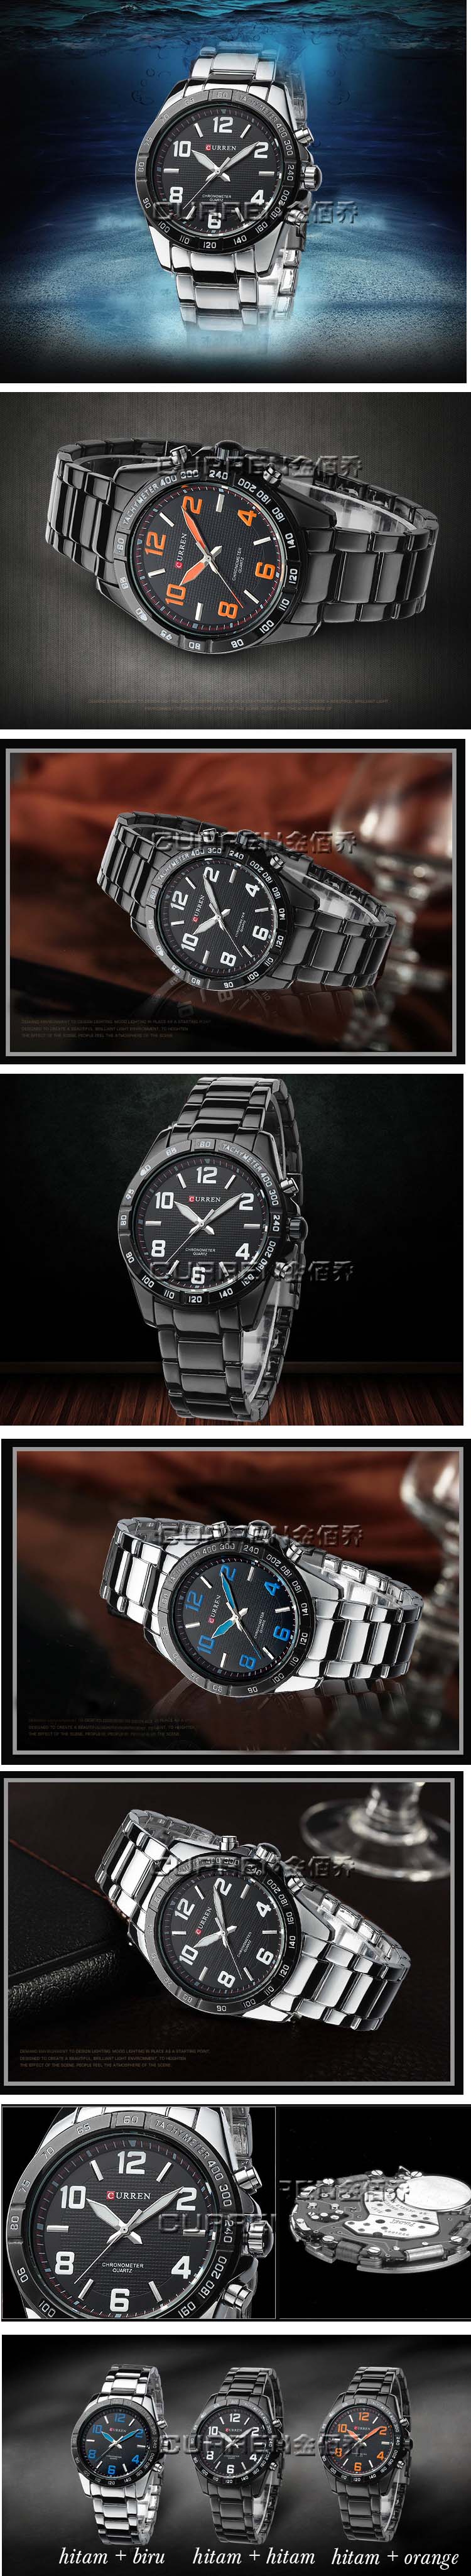 jual jam tangan pria branded terkenal karena mutu jam tangan dengan feature water resistance